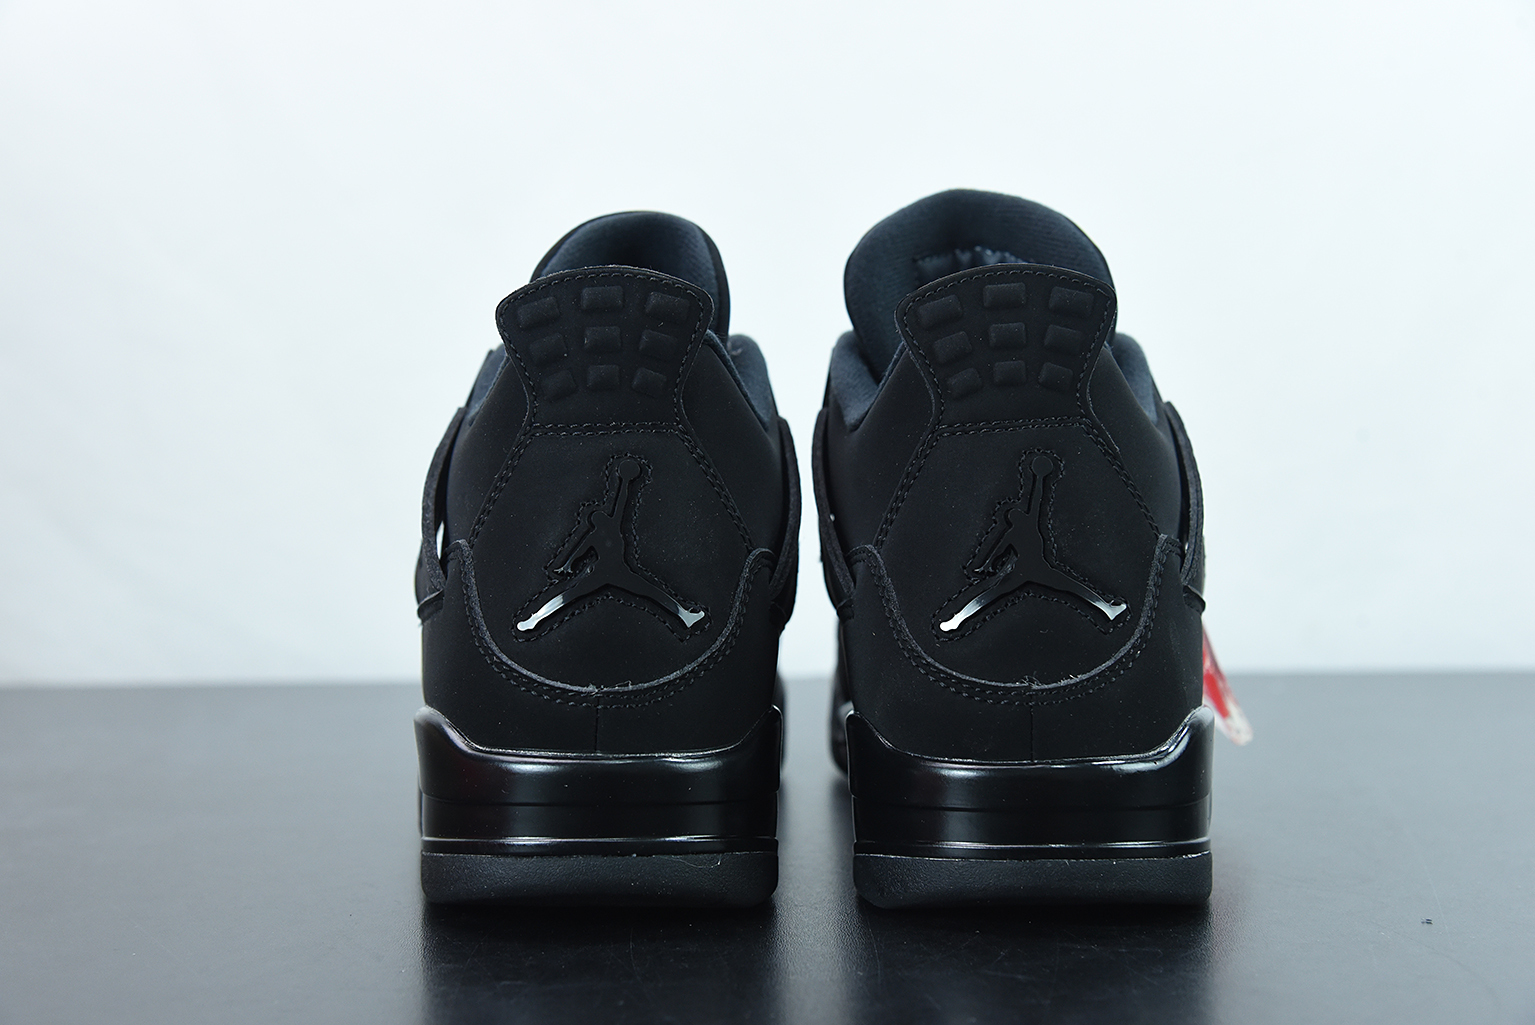 💖Buy 1 PK Sneakers to get this Pair $59.9💖 G5 Jordan 4 Retro Black Cat (2020),CU1110-010